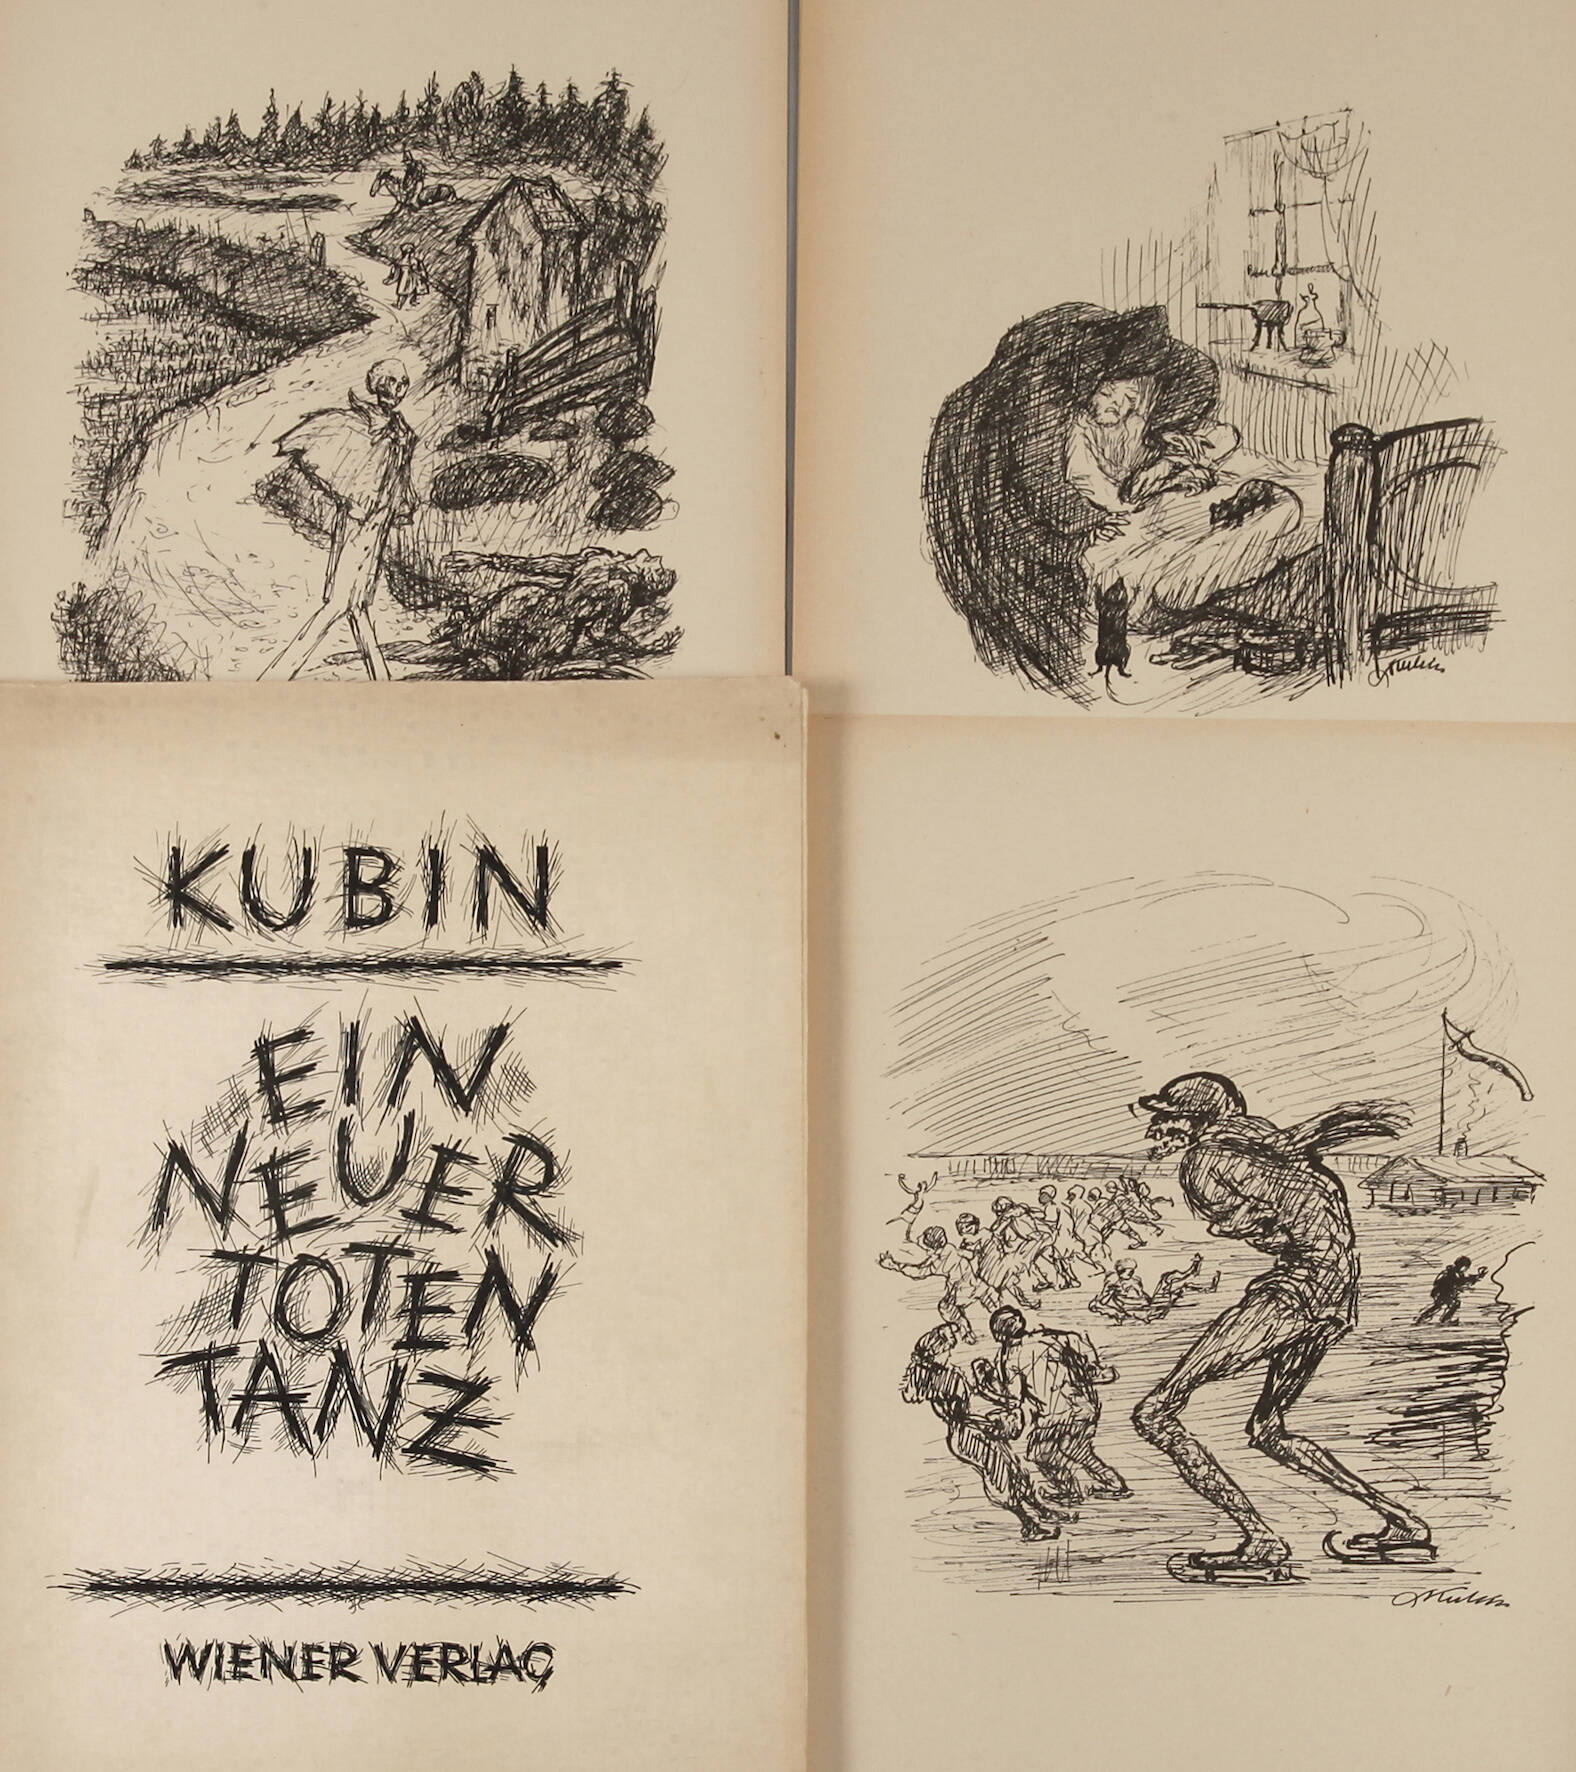 Alfred Kubin, "Ein neuer Totentanz"